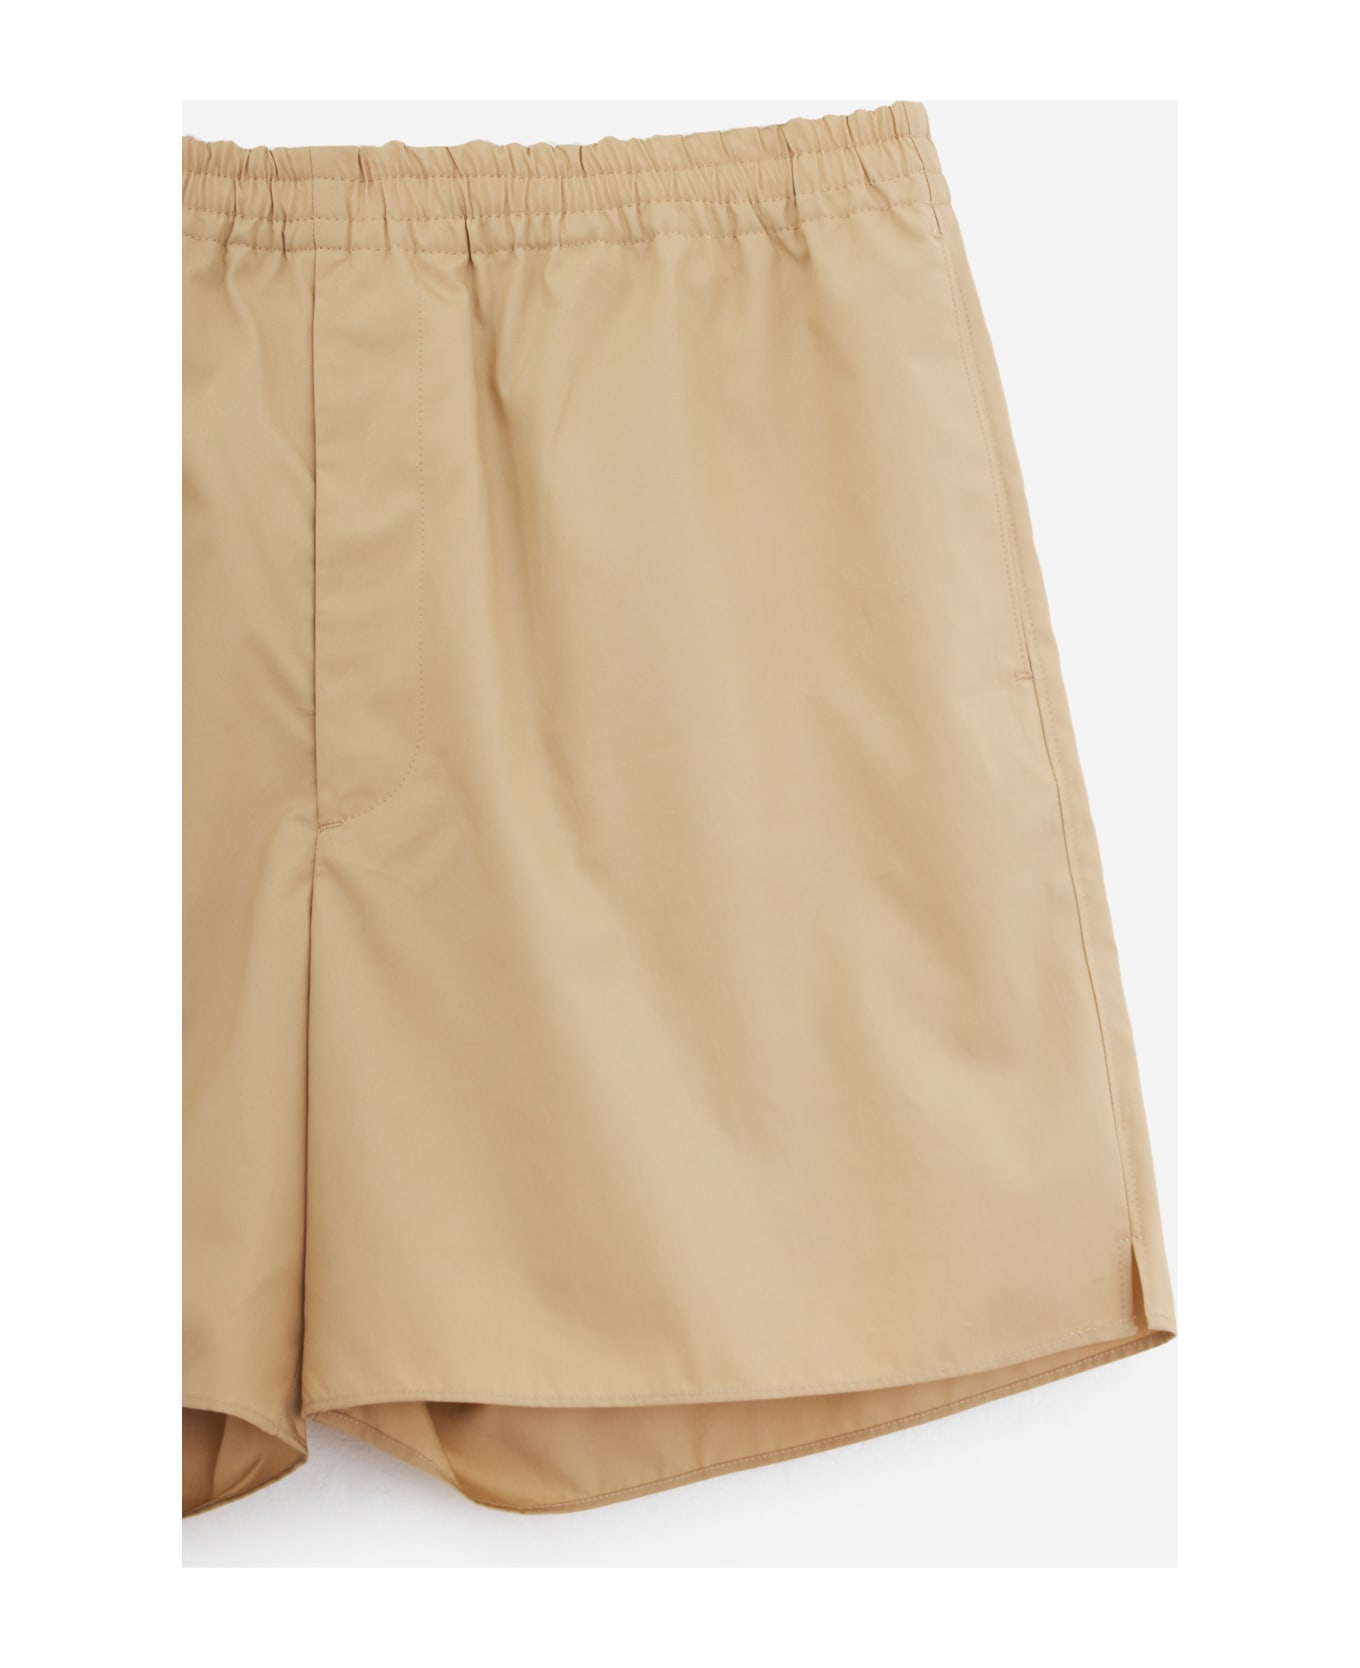 Auralee Shorts - beige